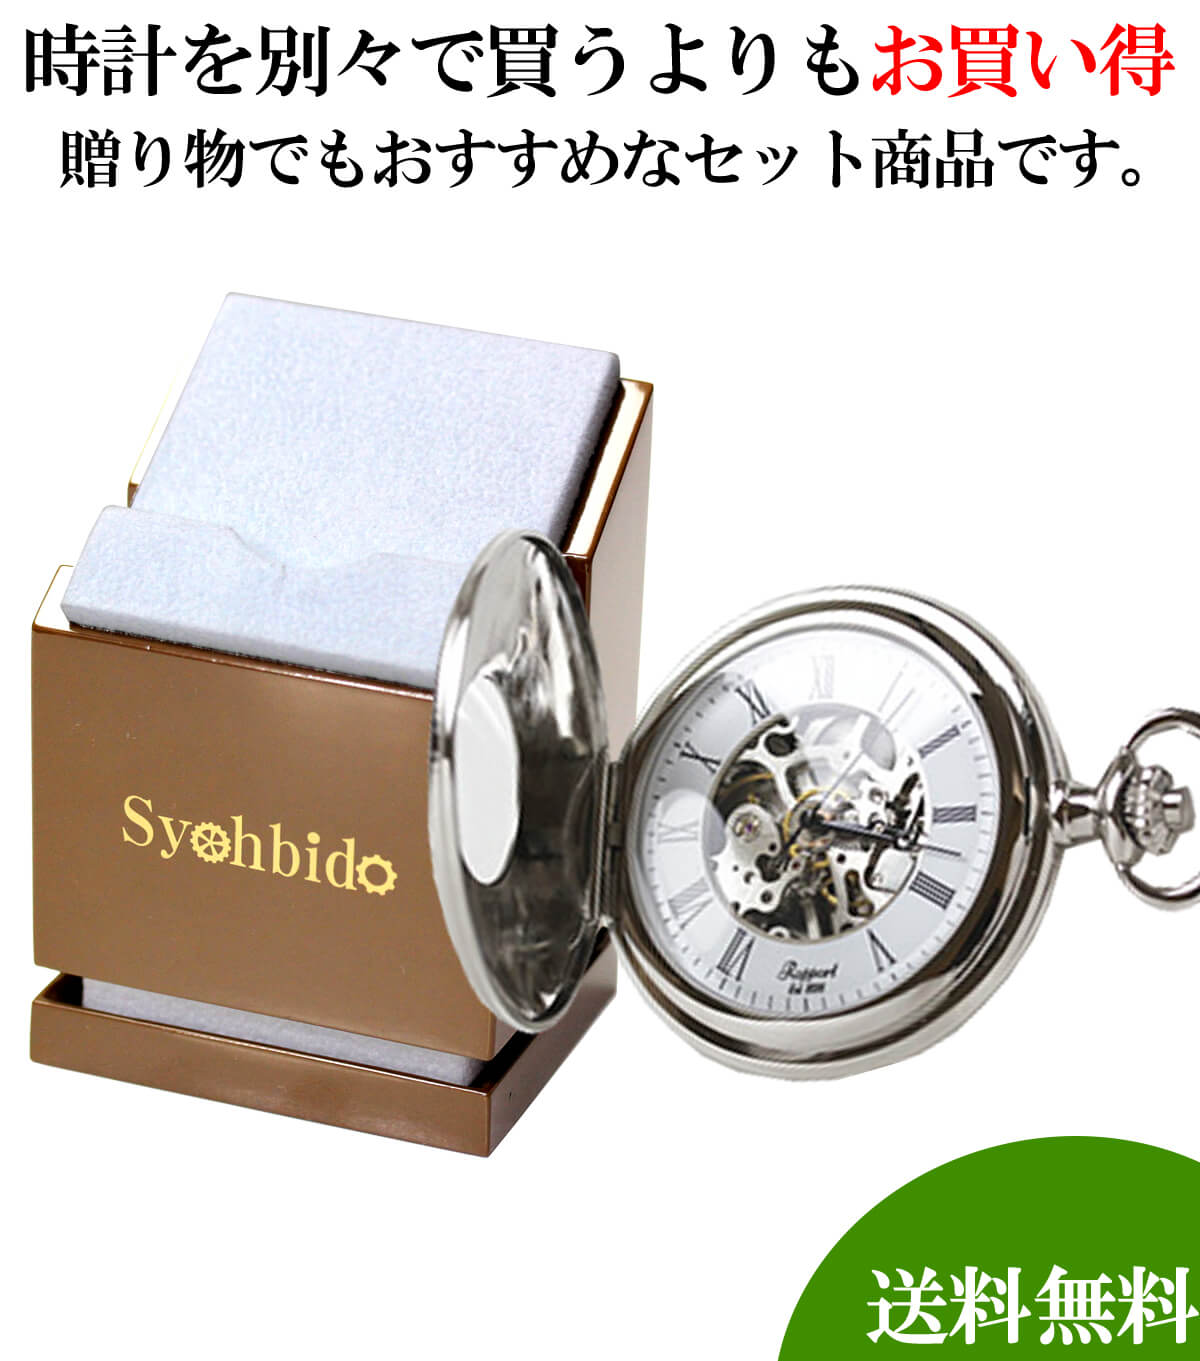 懐中時計と懐中時計専用スタンドのセット pw57